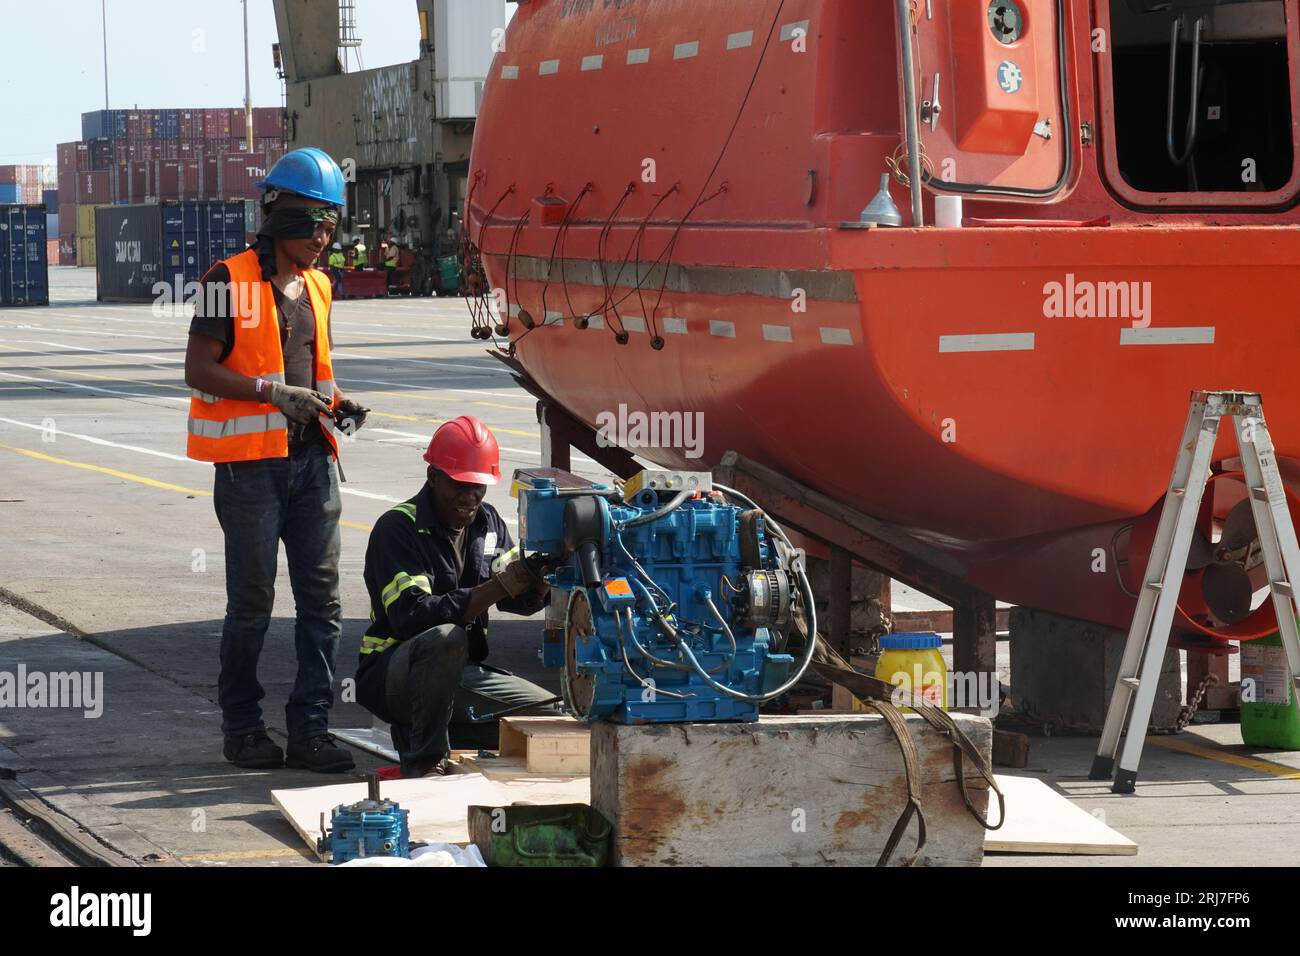 Zwei schwarze Mechaniker oder Techniker reparieren den Motor des orangefarbenen Rettungsbootes, der an der Ladestation befestigt ist. Stockfoto